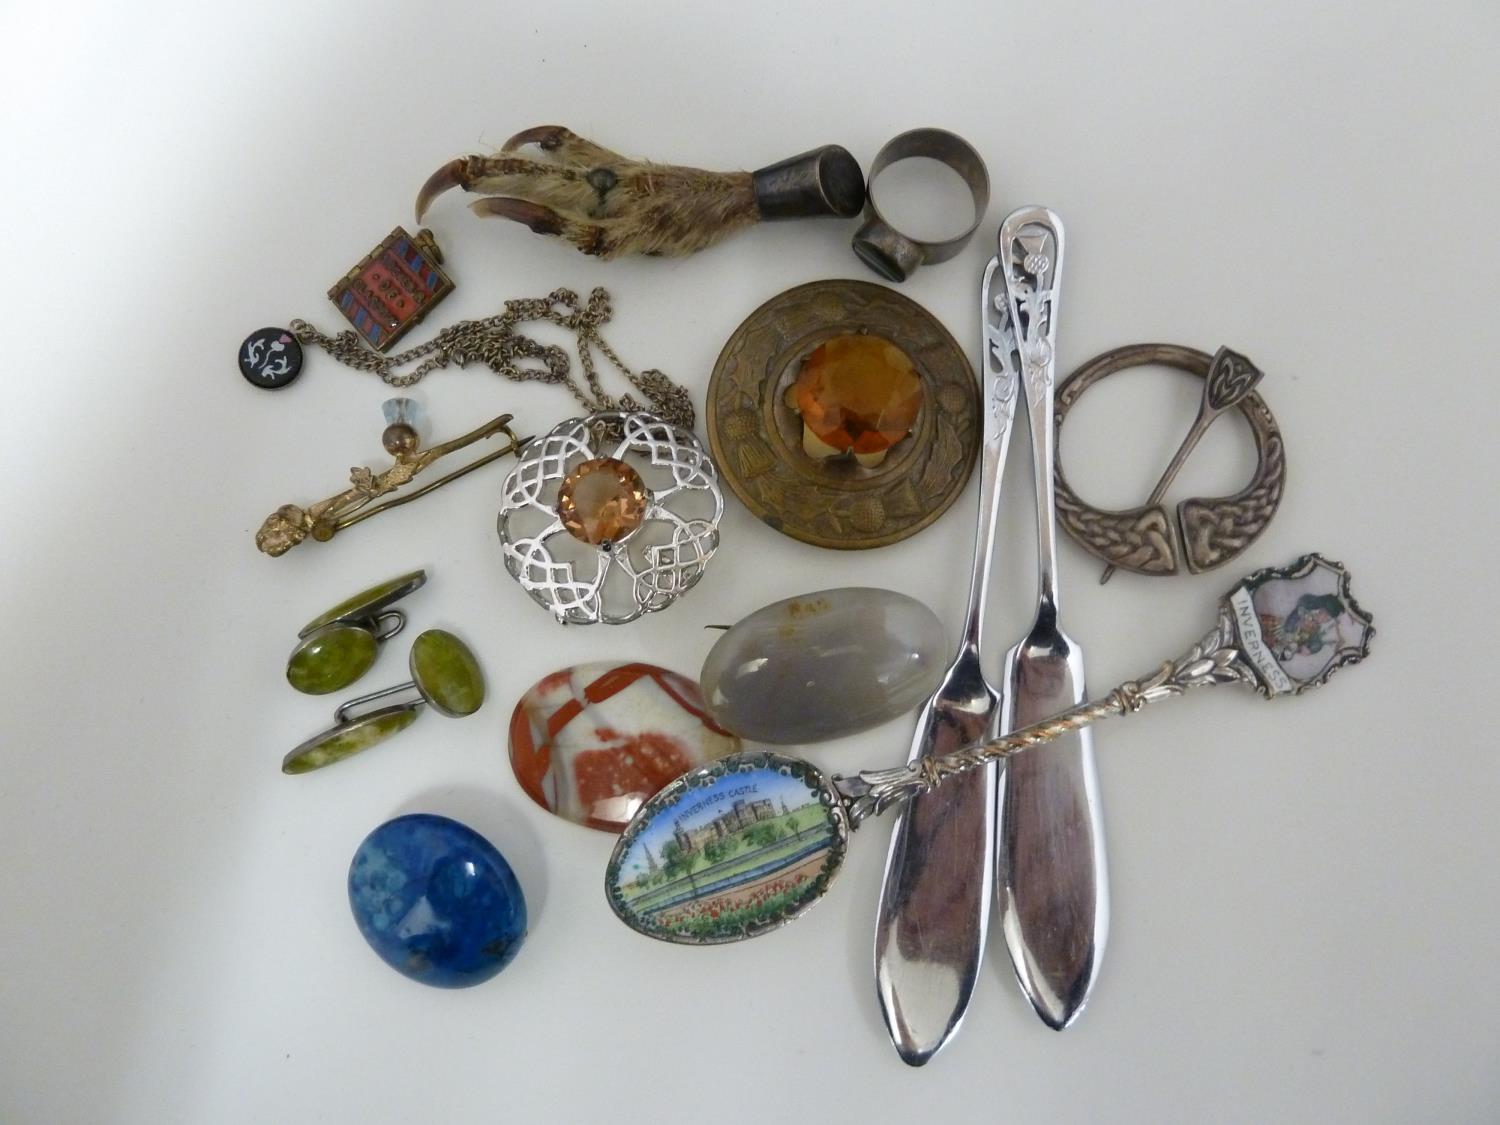 Scottish Interest - An Inverness enamelled souvenir spoon; a souvenir of Glasgow miniature charm